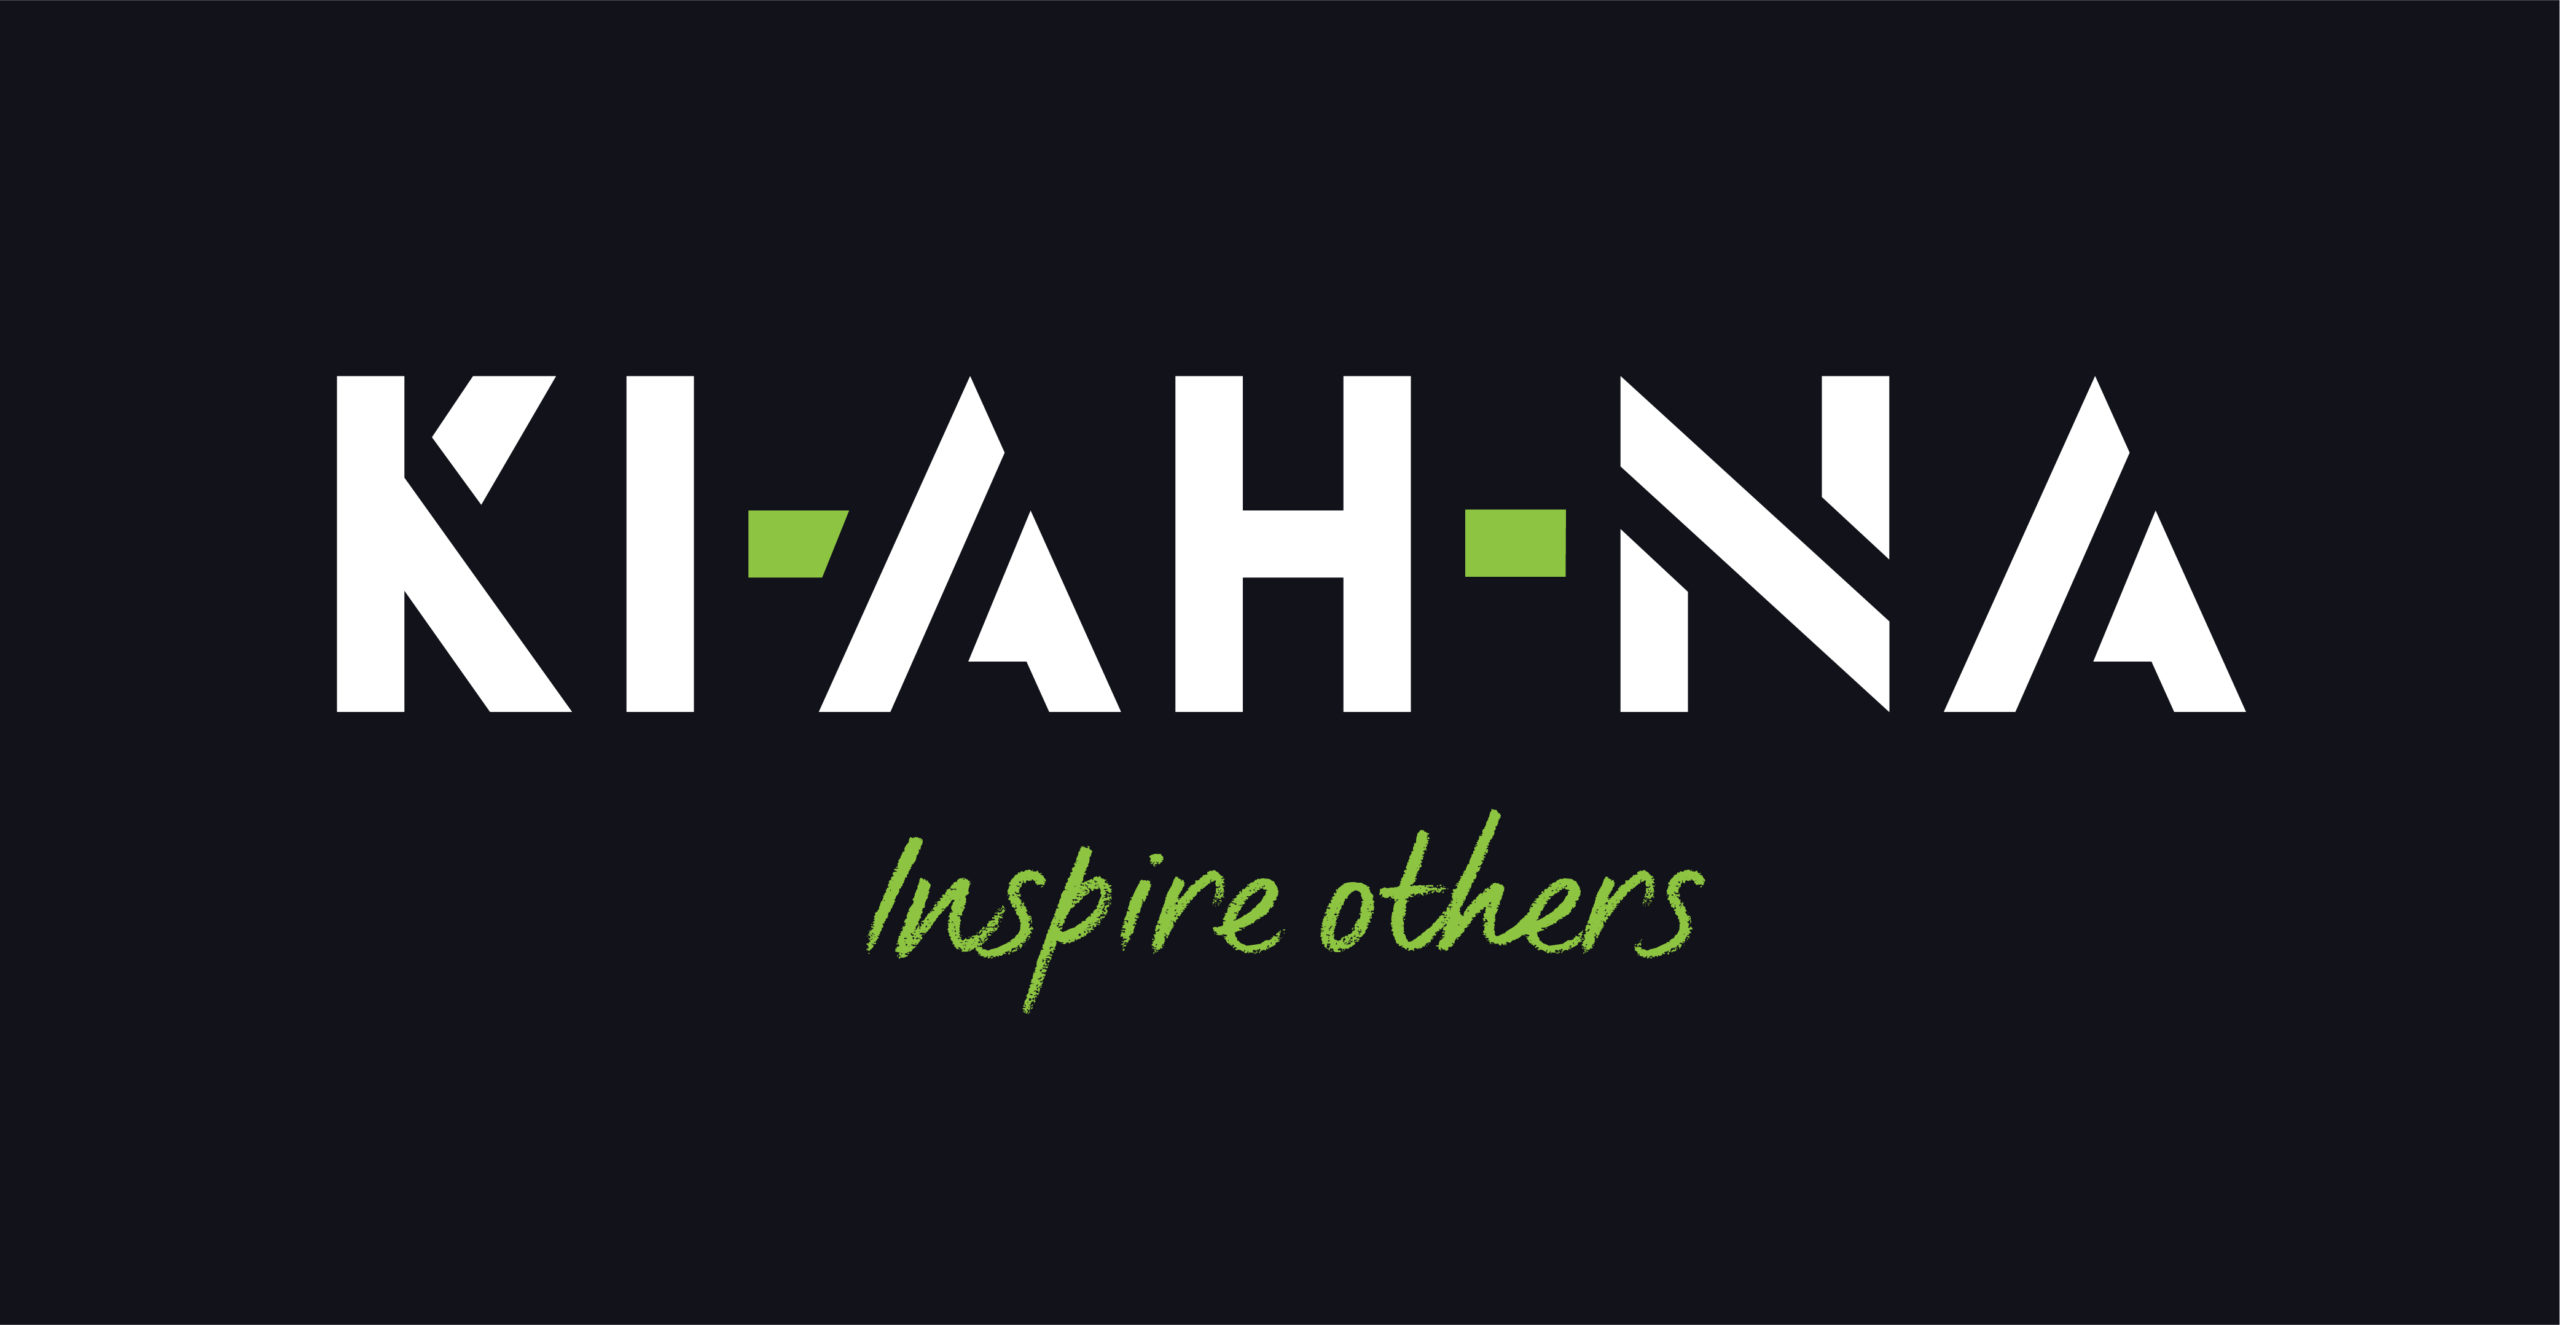 KI-AH-NA logo